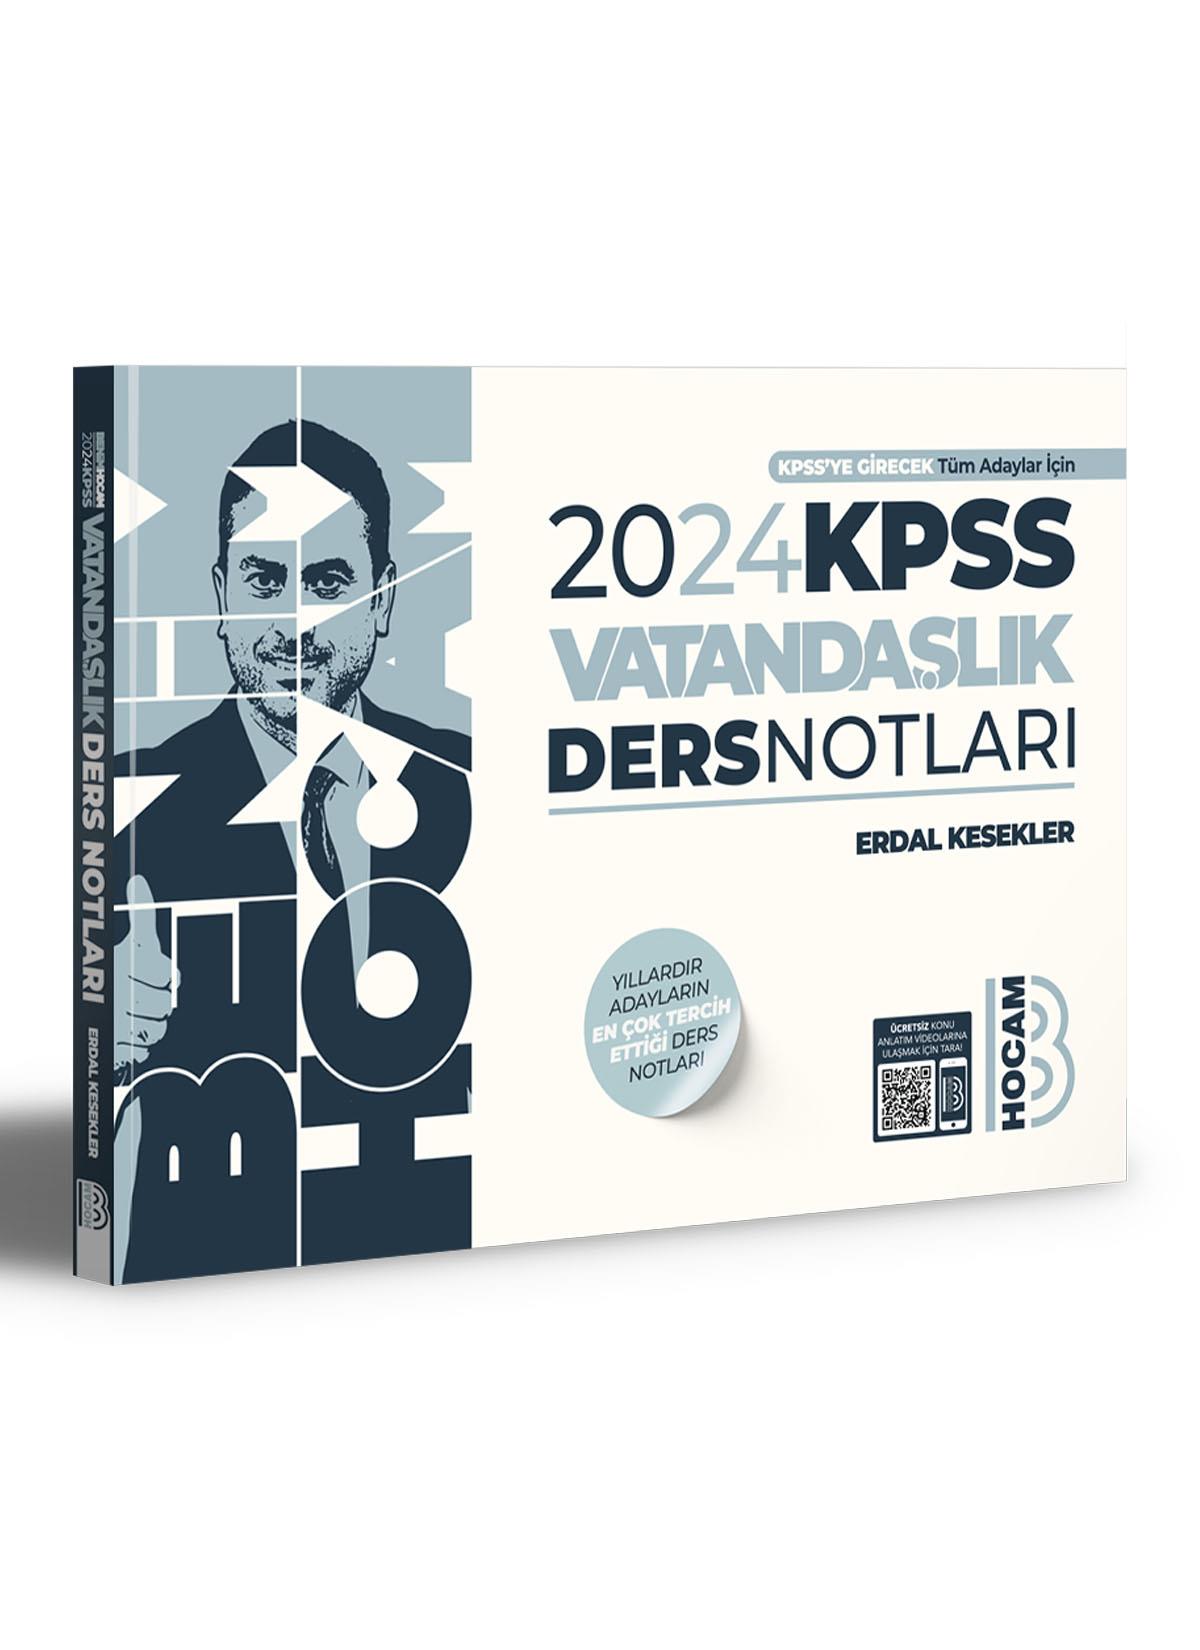 2024 KPSS Vatandaşlık Ders Notları Benim Hocam Yayınları Vatandaşlık KPSS  Soru bankası En çok Satan KPSS kitapları